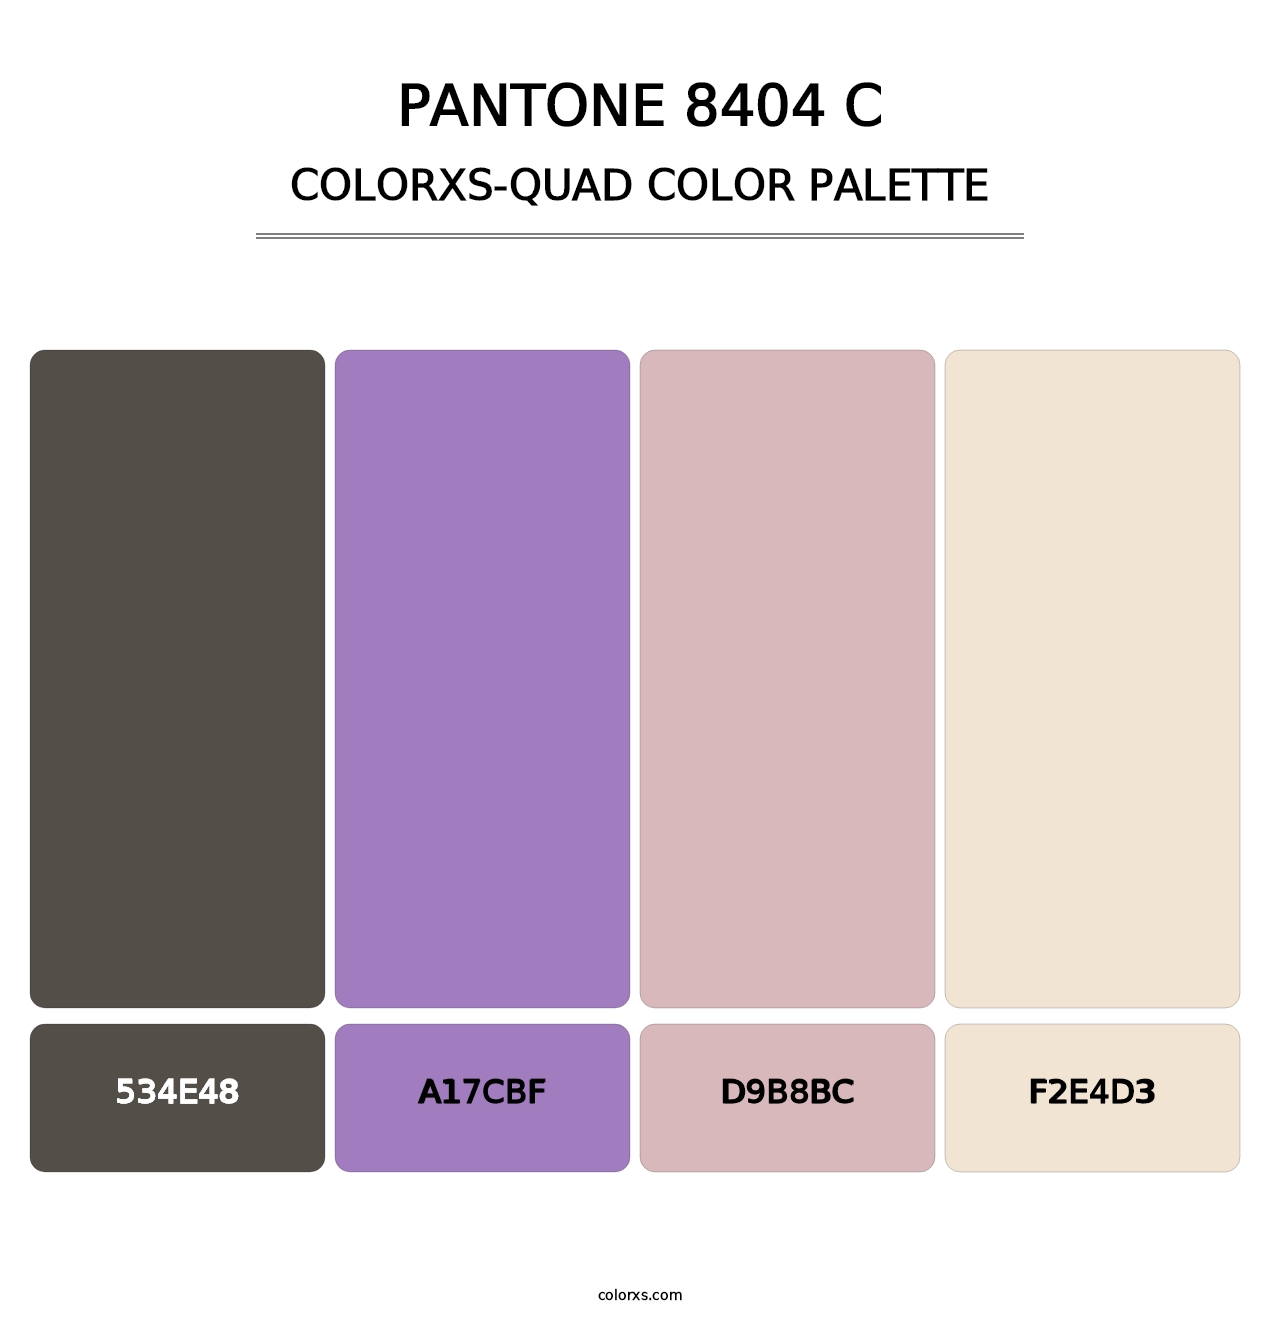 PANTONE 8404 C - Colorxs Quad Palette